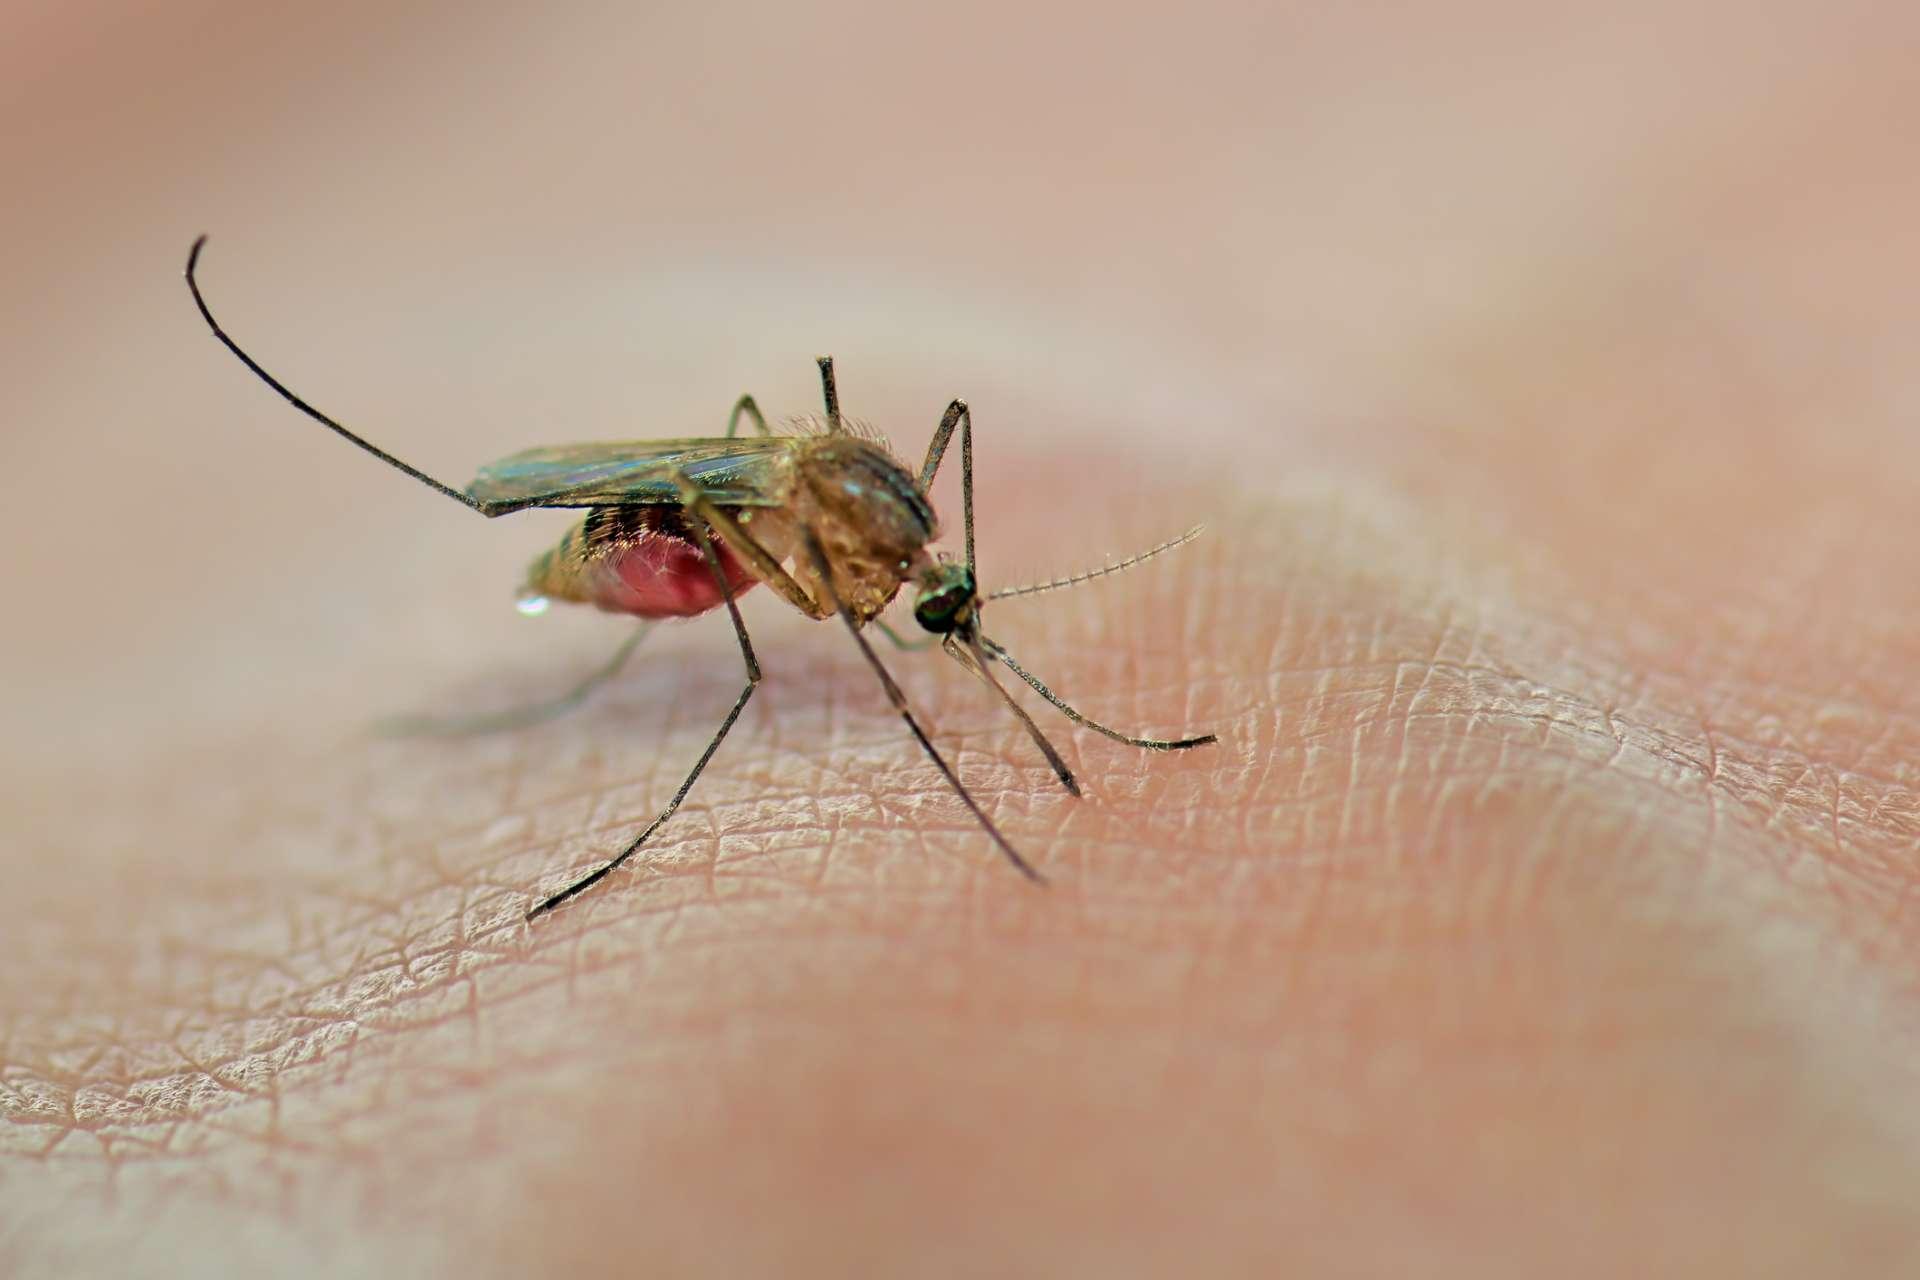 Mücke saugt Blut auf der menschlichen Haut